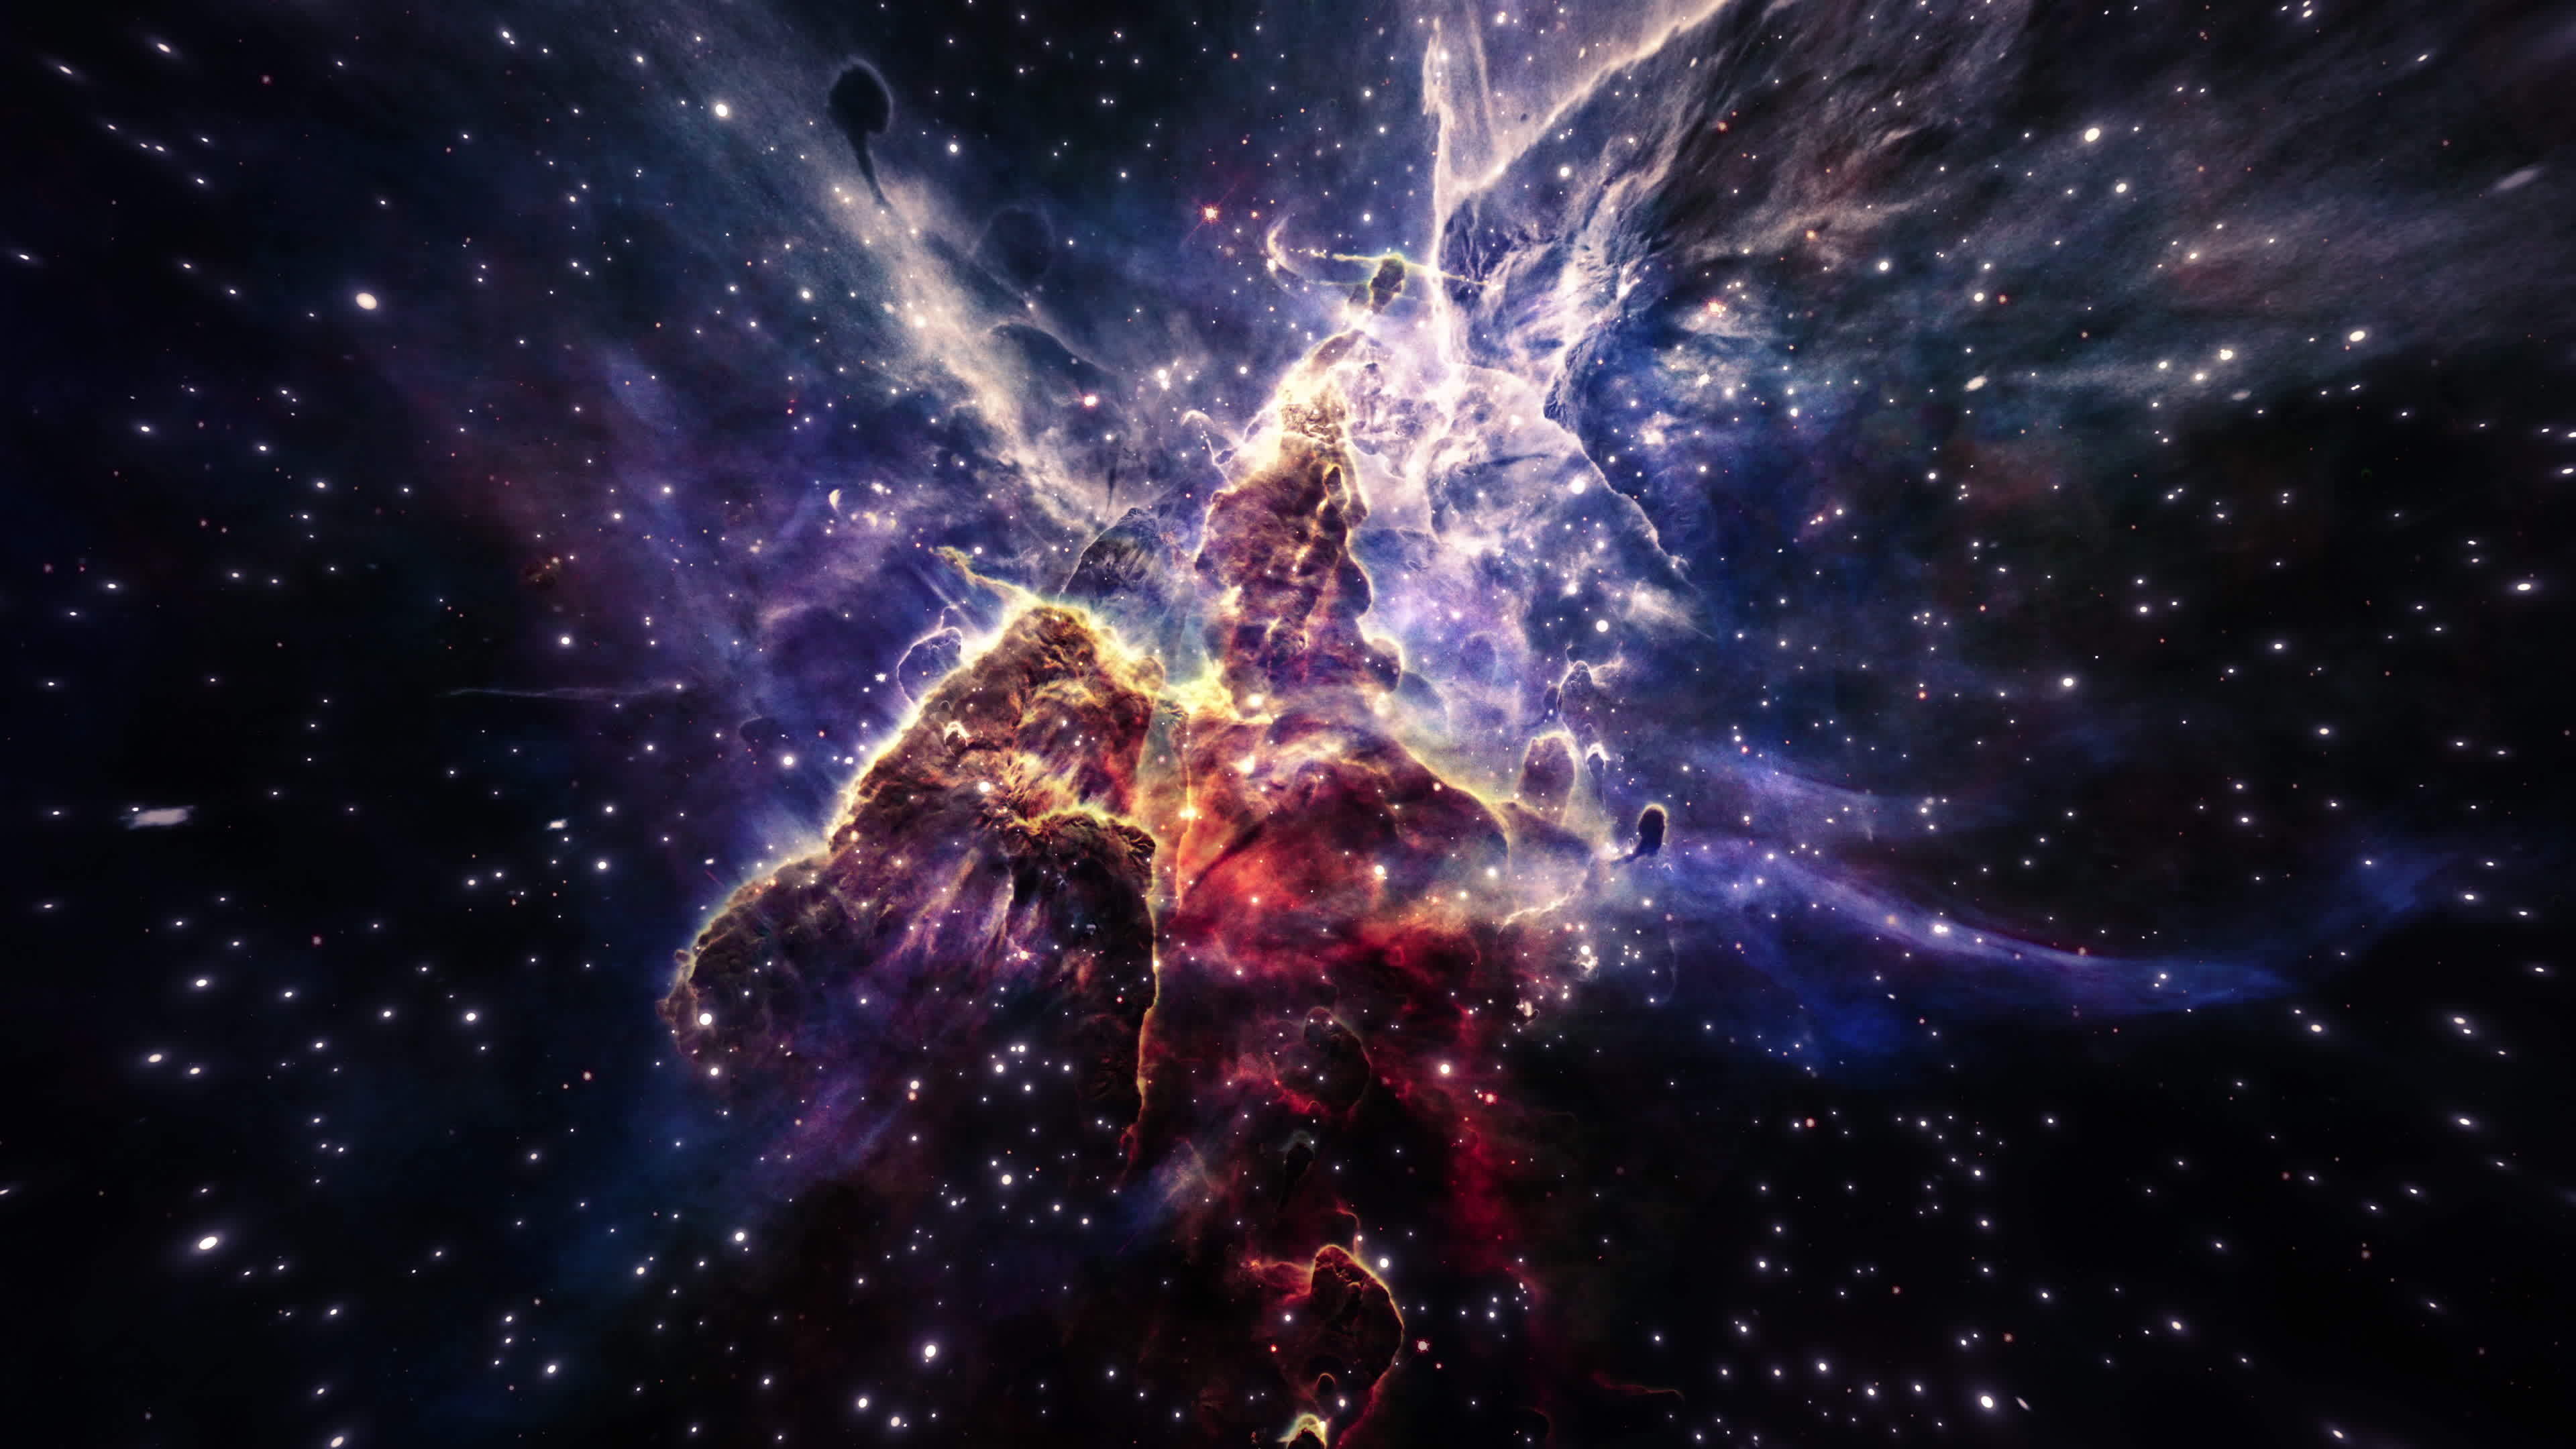 Carina Nebula print by NASA | Posterlounge